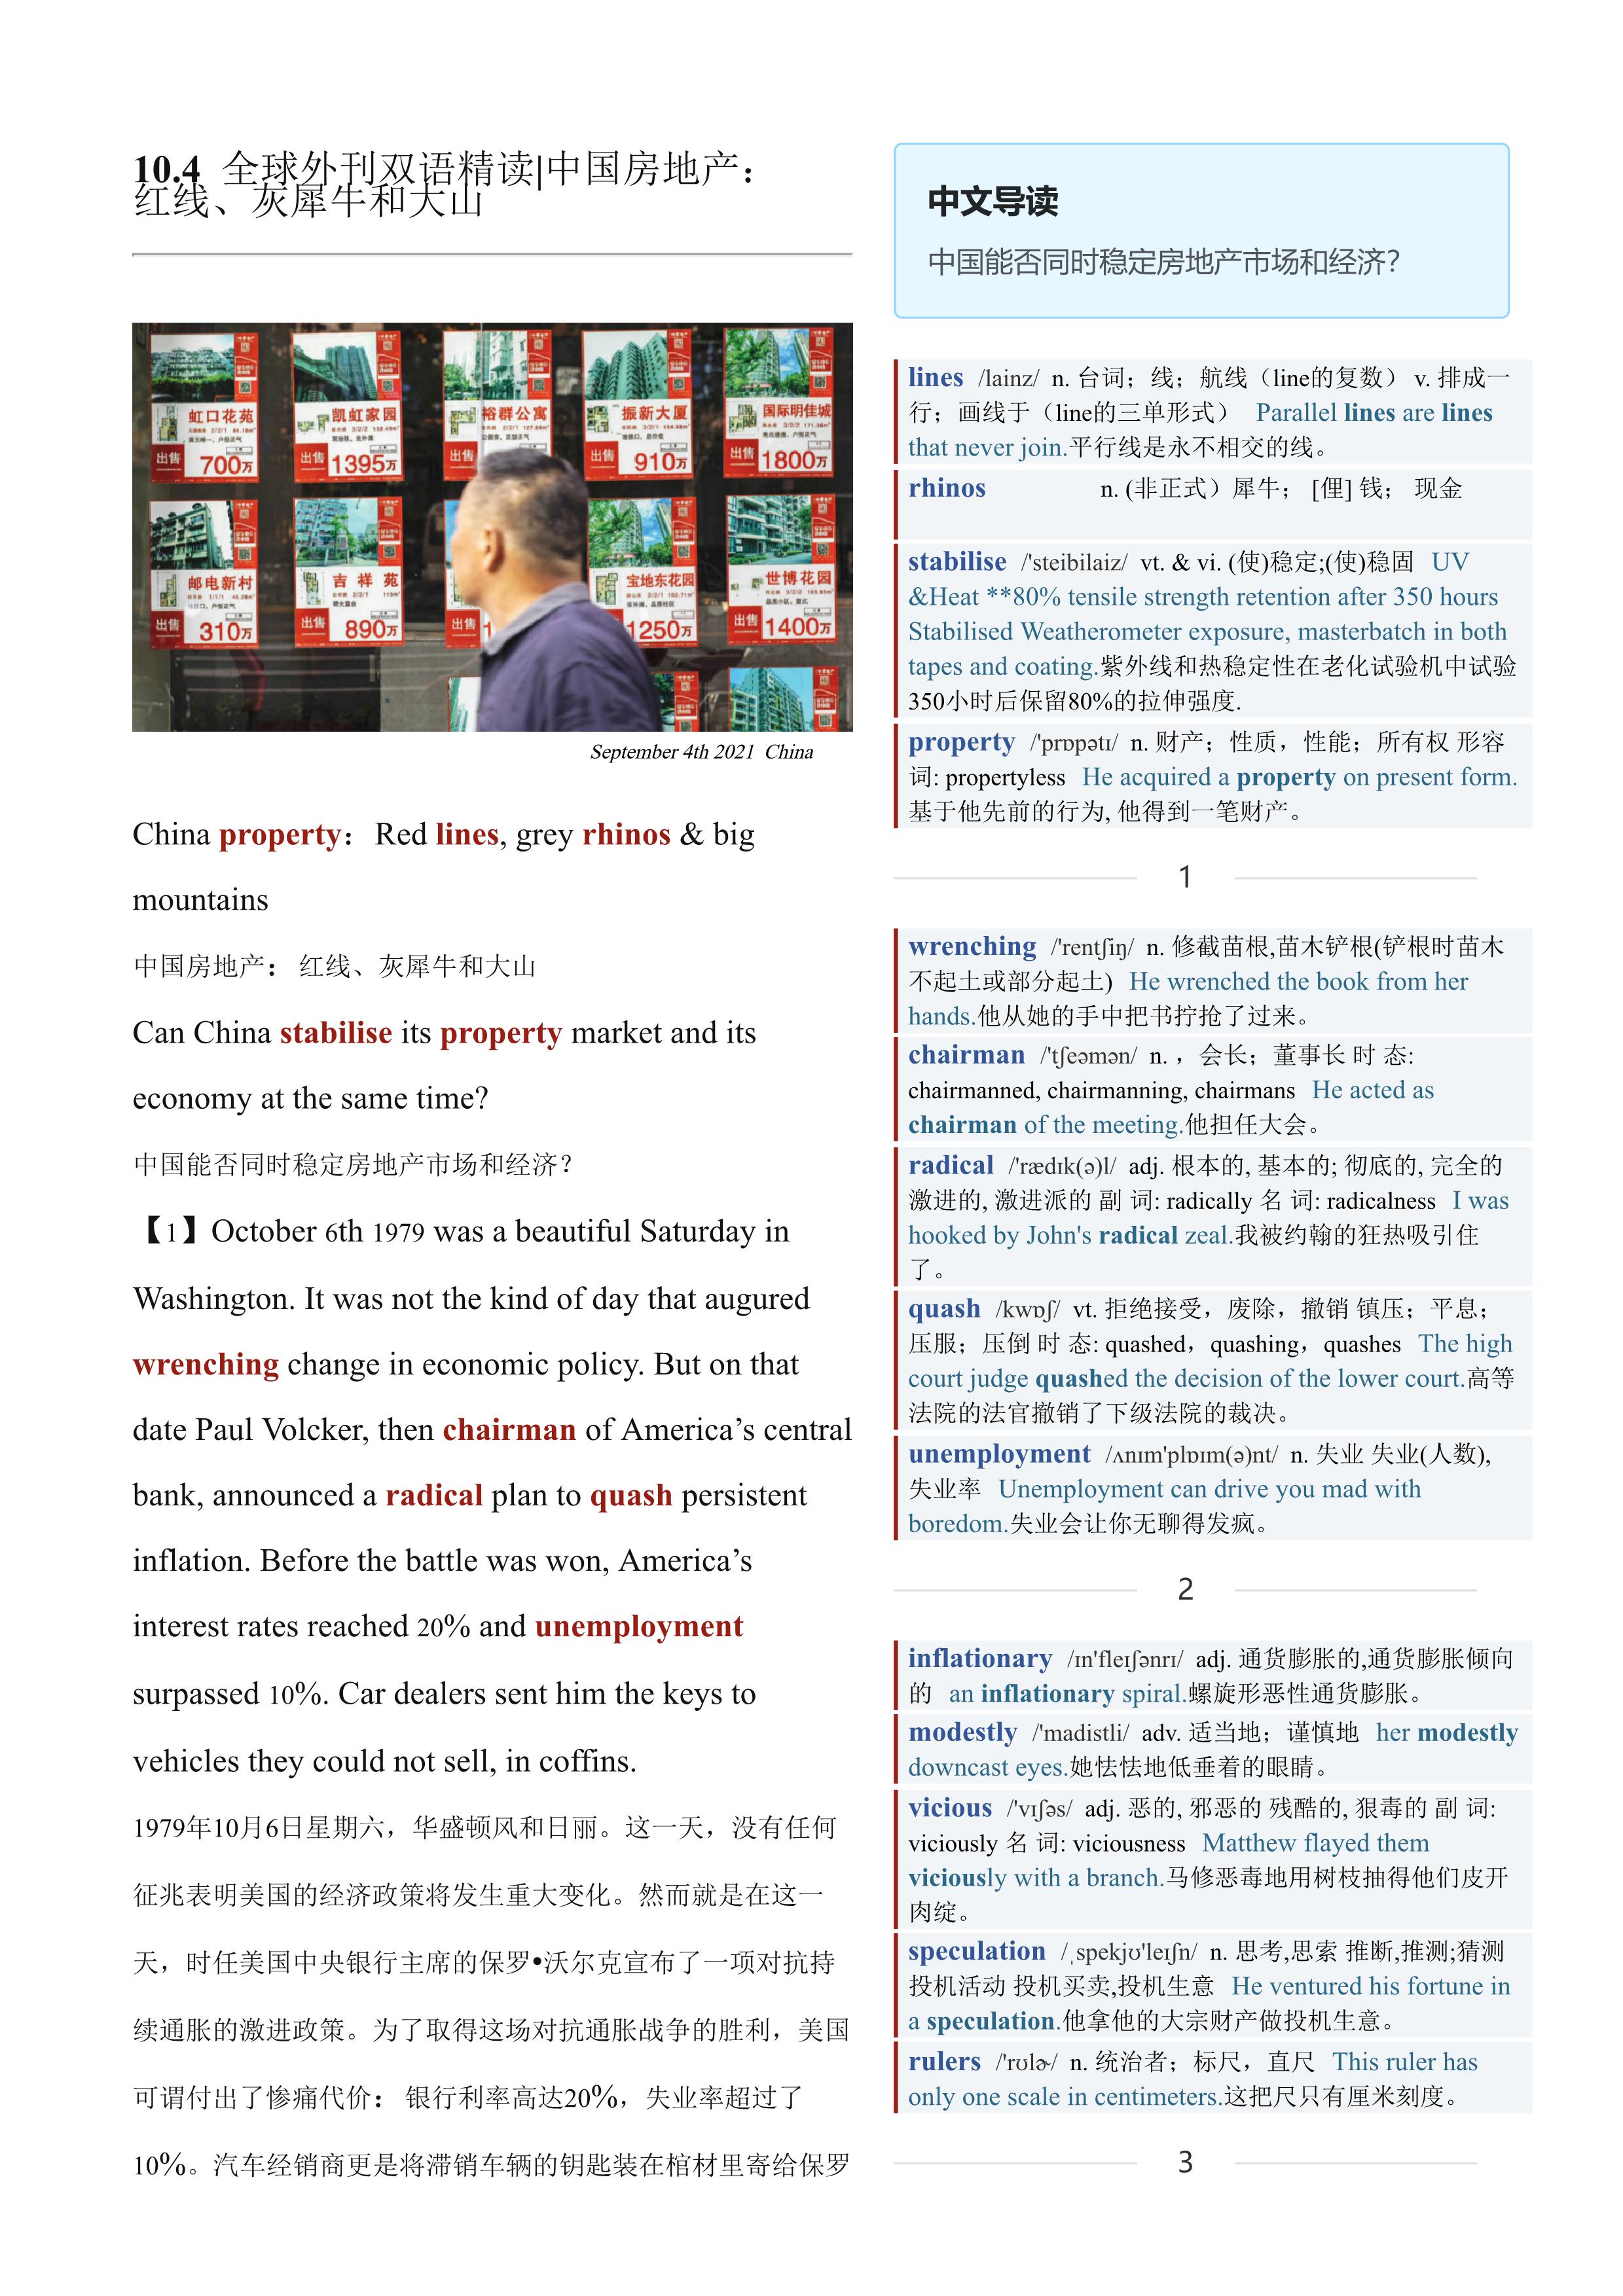 2021.10.04 经济学人双语精读丨中国房地产：红线、灰犀牛和大山 (.PDF/DOC/MP3)